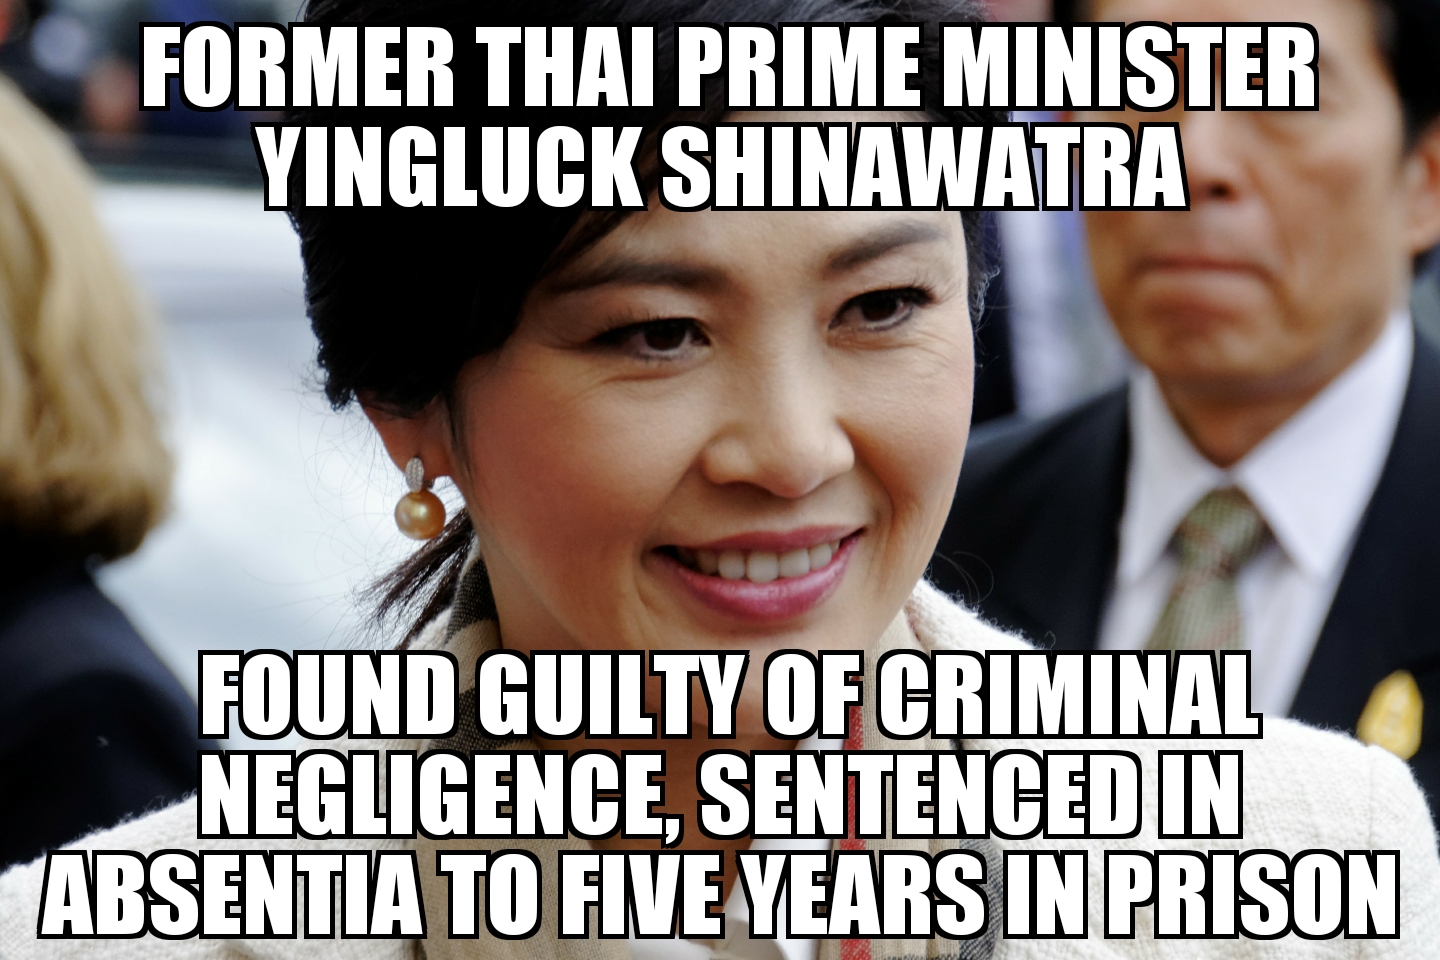 Yingluck Shinawatra found guilty